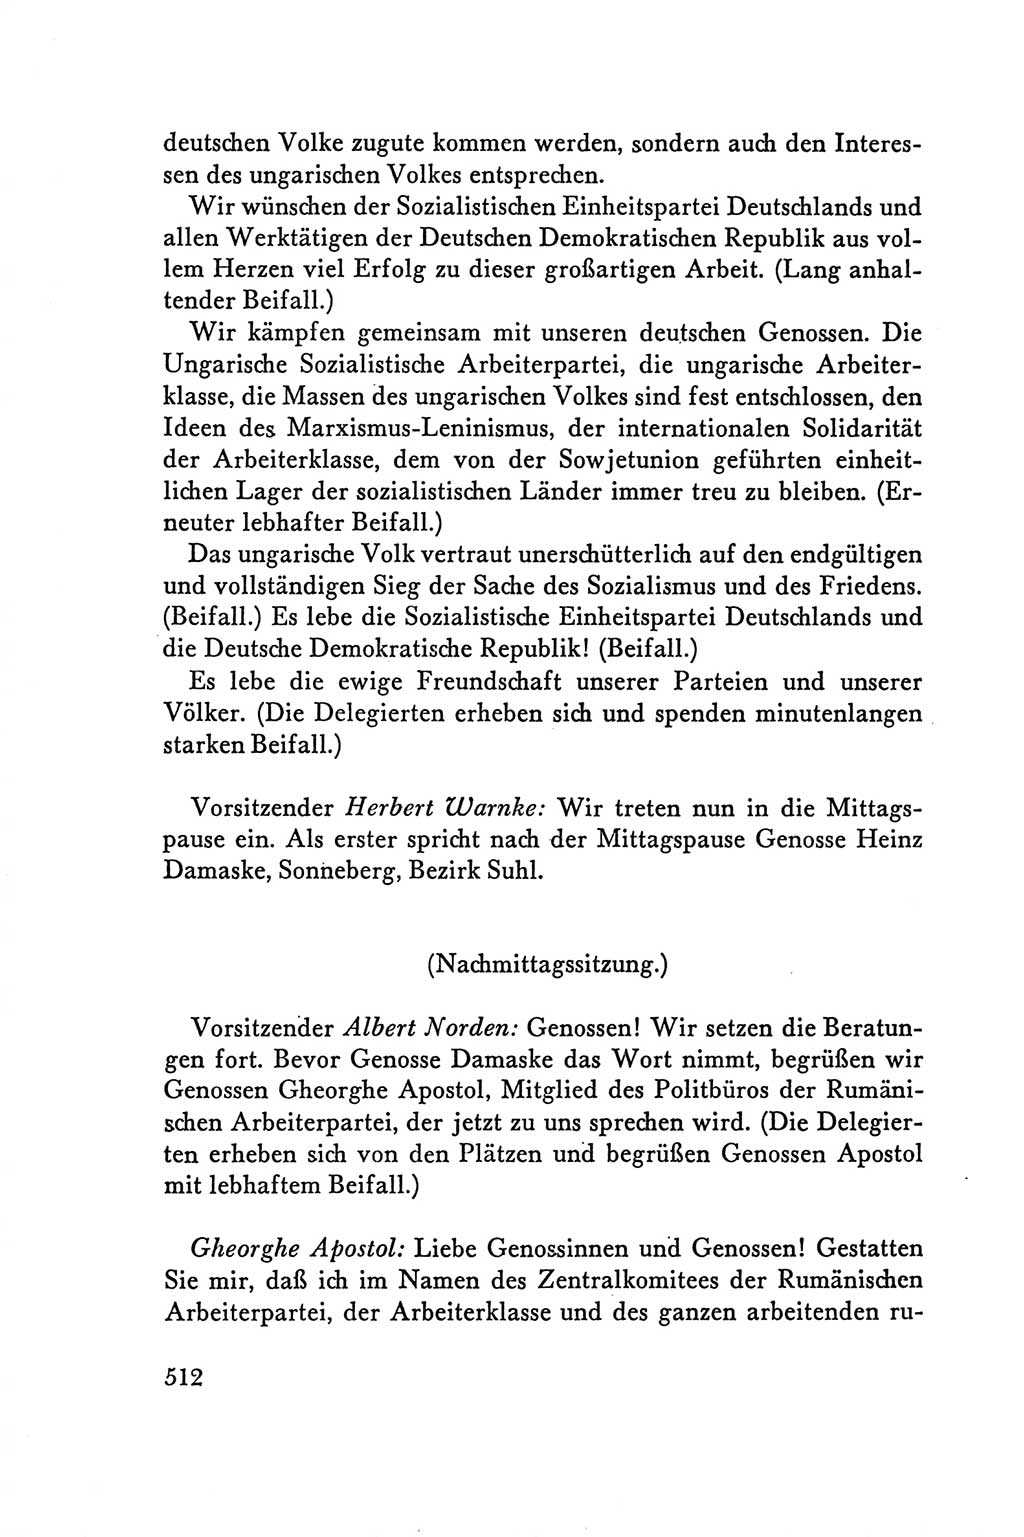 Protokoll der Verhandlungen des Ⅴ. Parteitages der Sozialistischen Einheitspartei Deutschlands (SED) [Deutsche Demokratische Republik (DDR)] 1958, Seite 512